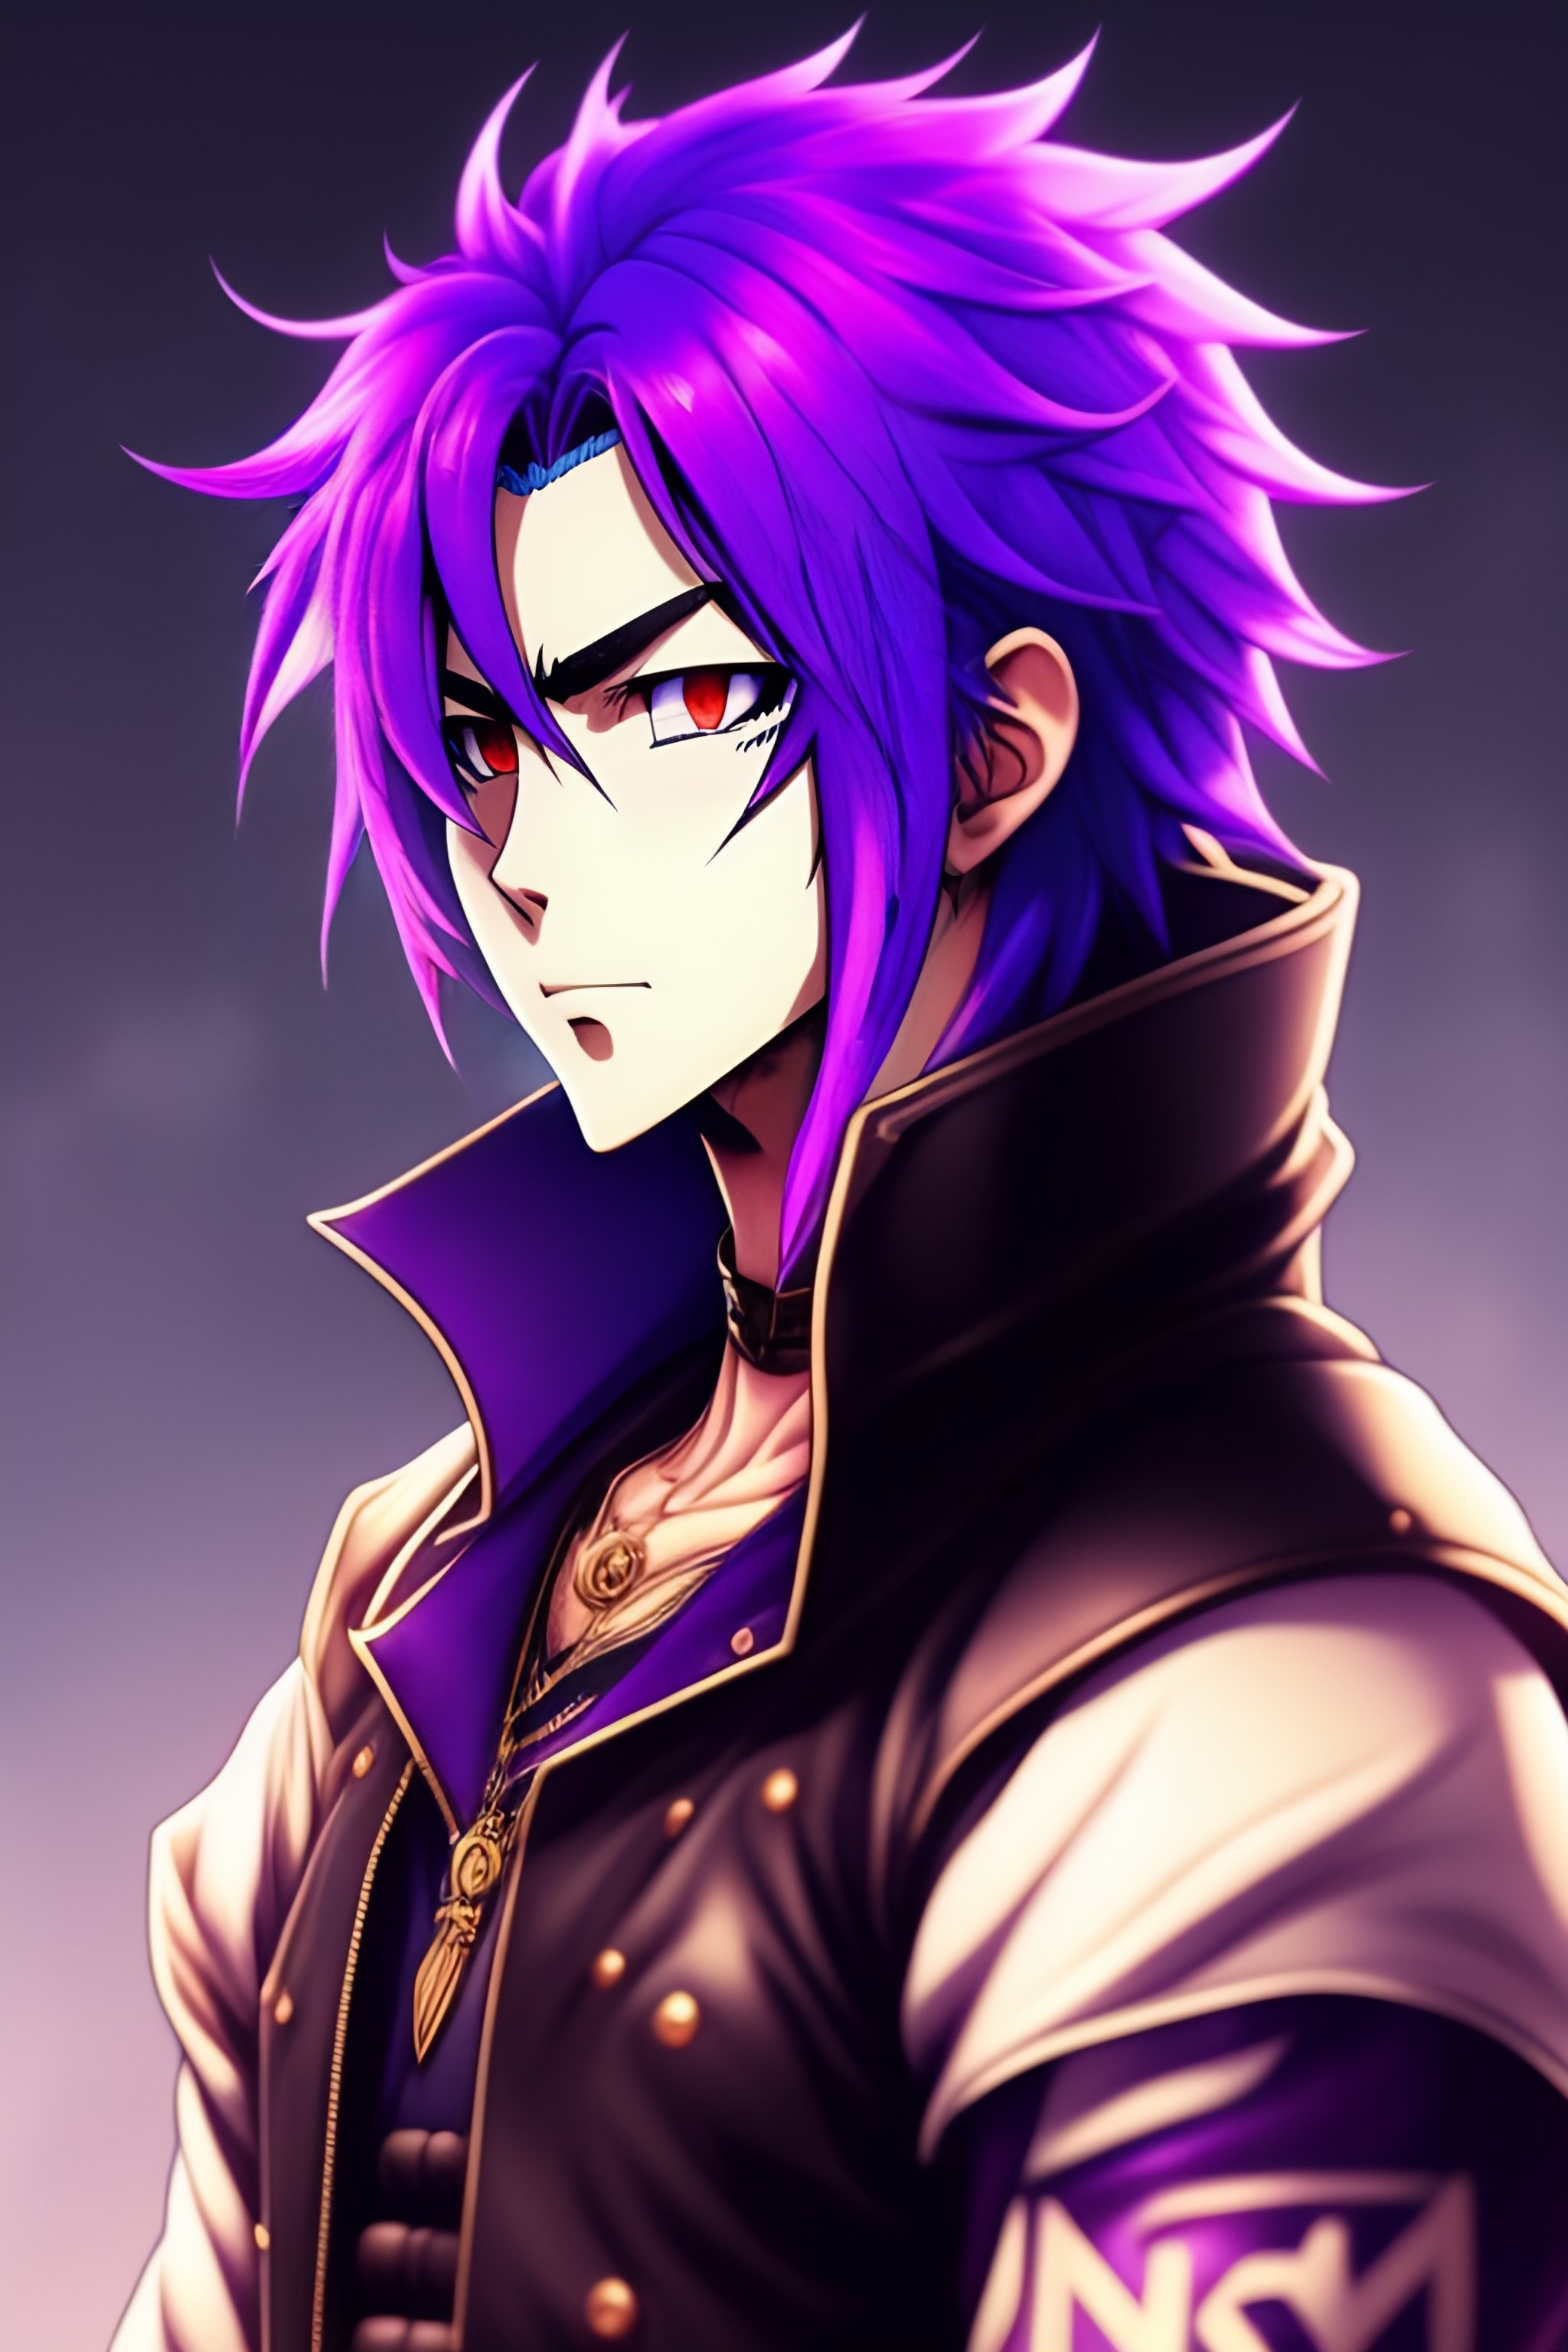 Lexica - Purple hair anime guy, badass, no expression, no emotion, no ...